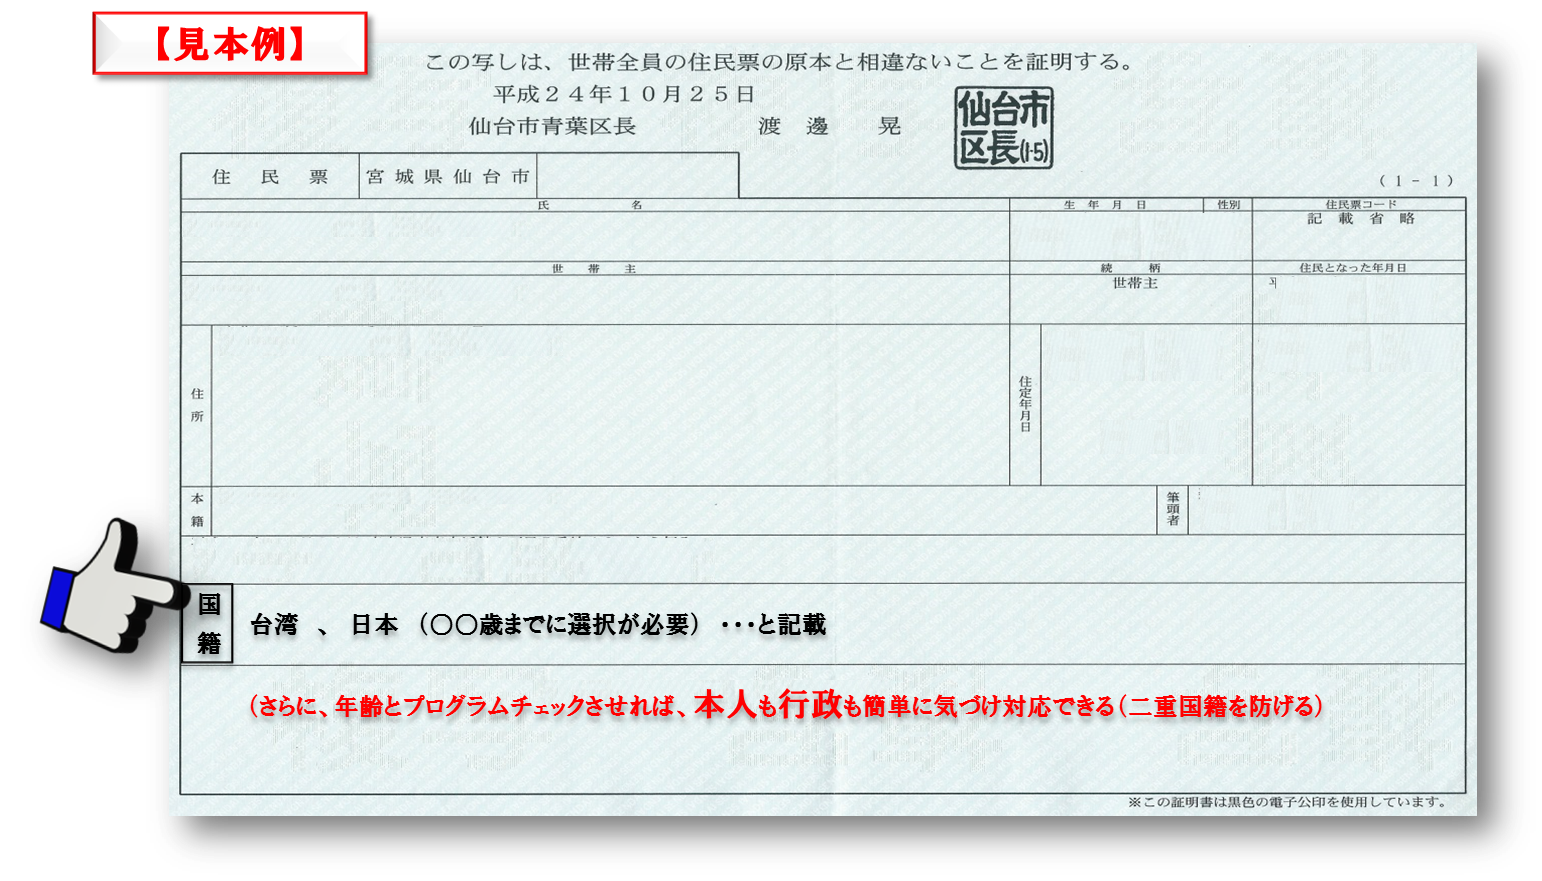 提案no 66 二重国籍問題 チェック機会の増加 住民票への記載 提案japan 提案ジャパン